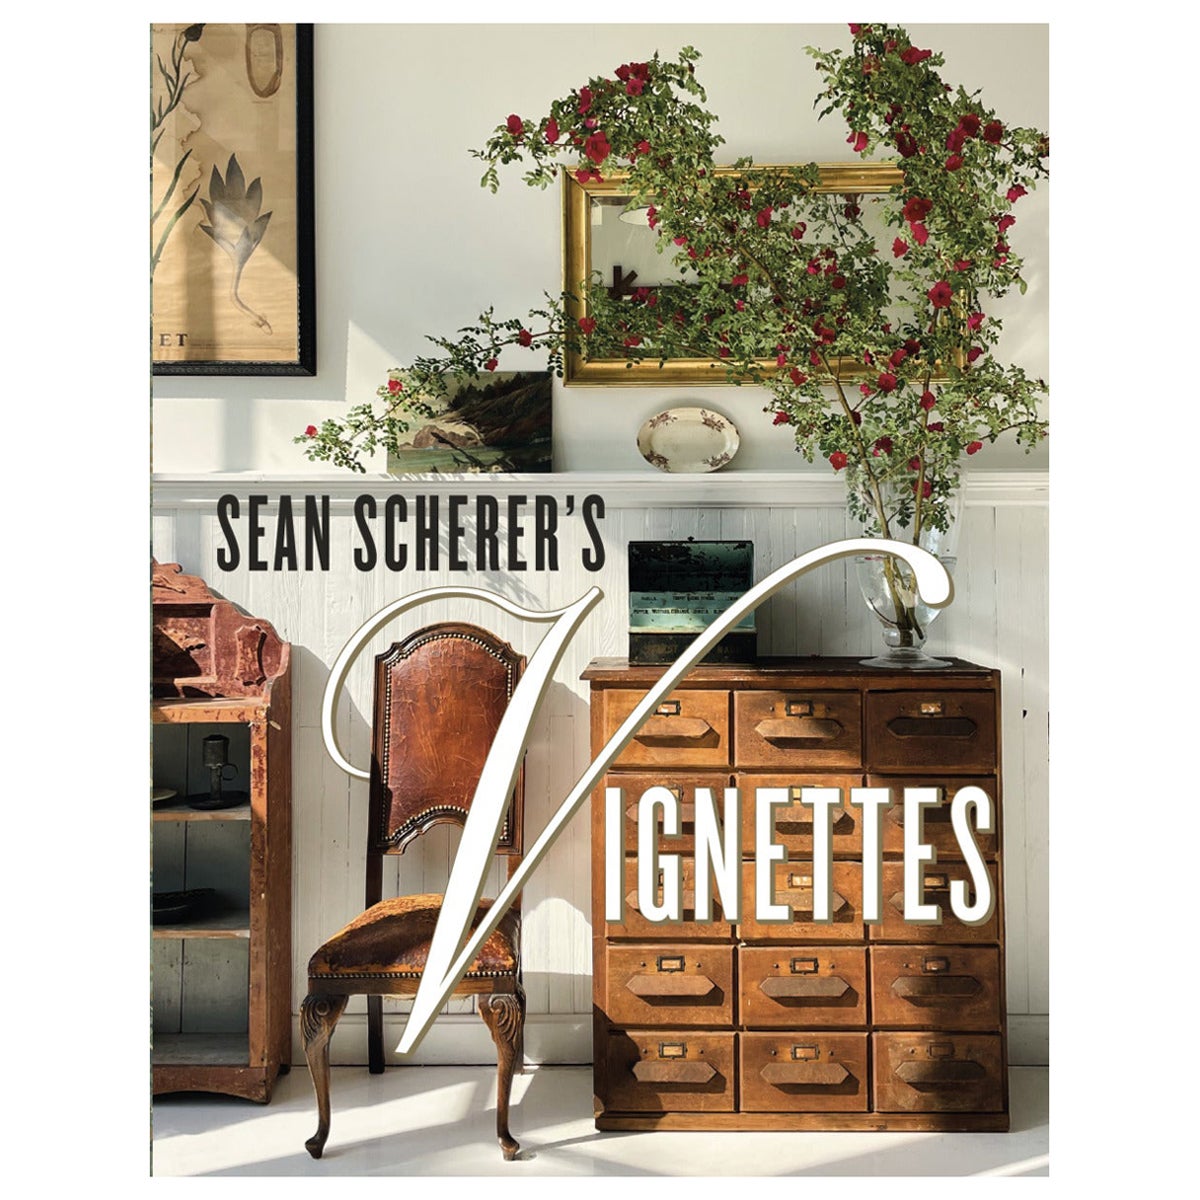 Sean Scherer’s Vignettes Book by Sean Scherer For Sale